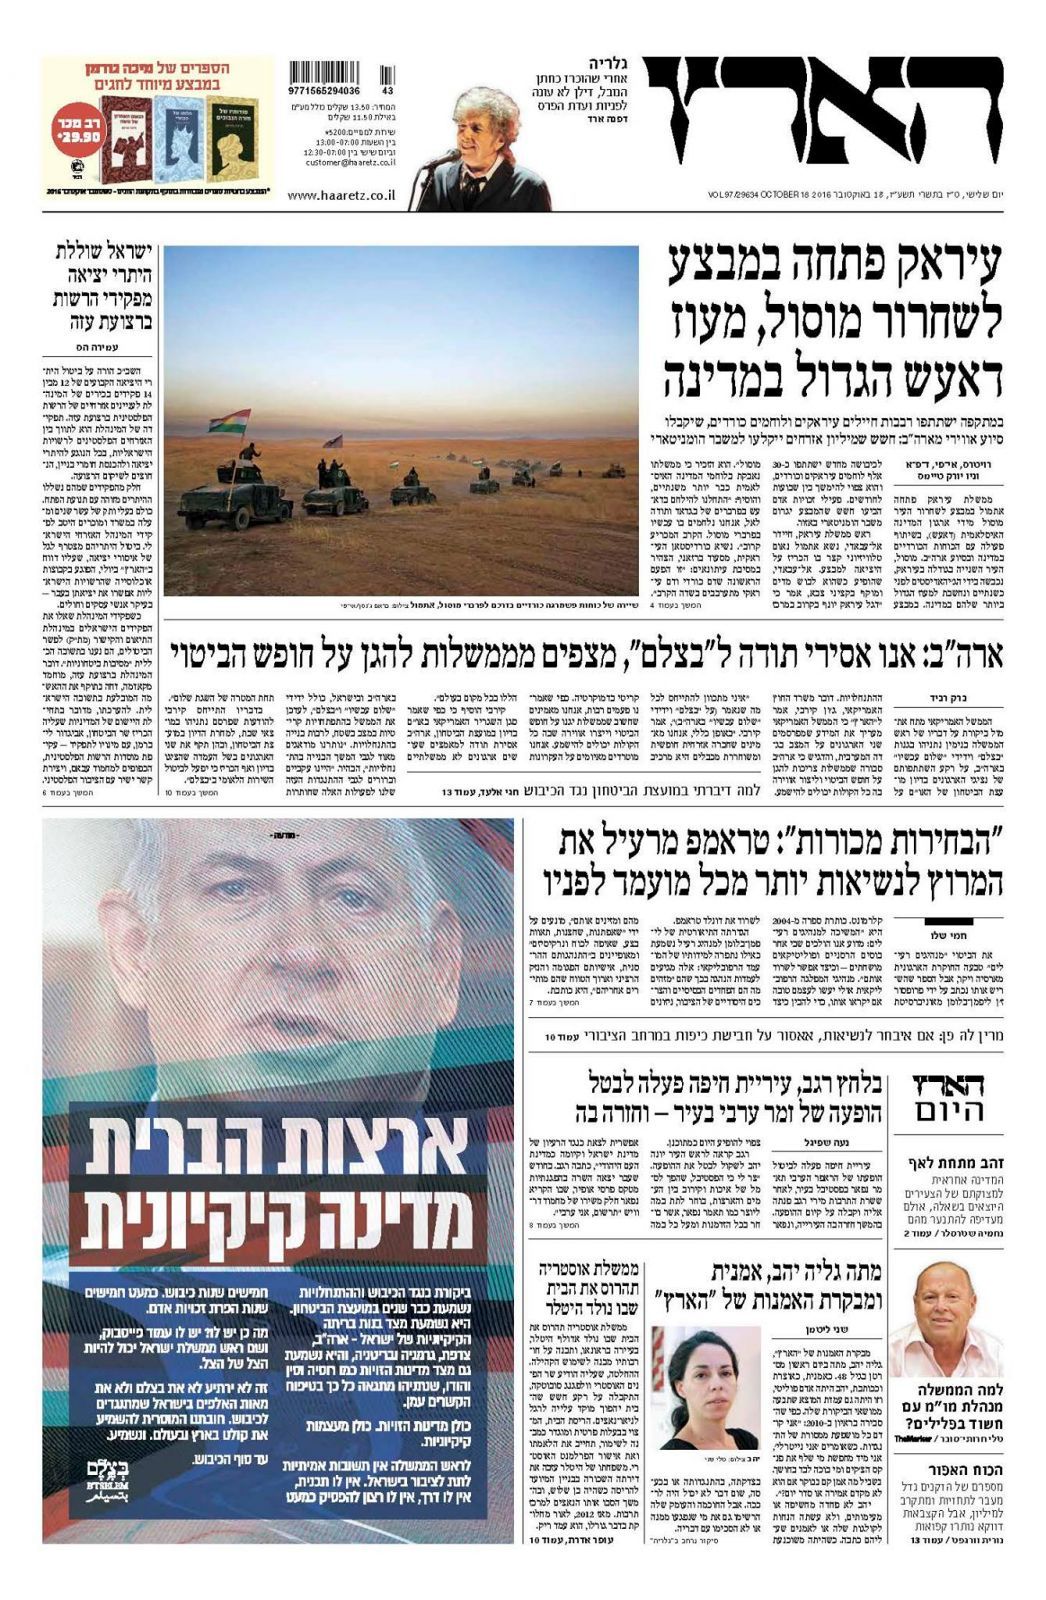 haaretz 18 10 2016 israel magazine 1 Bob Dylan front cover